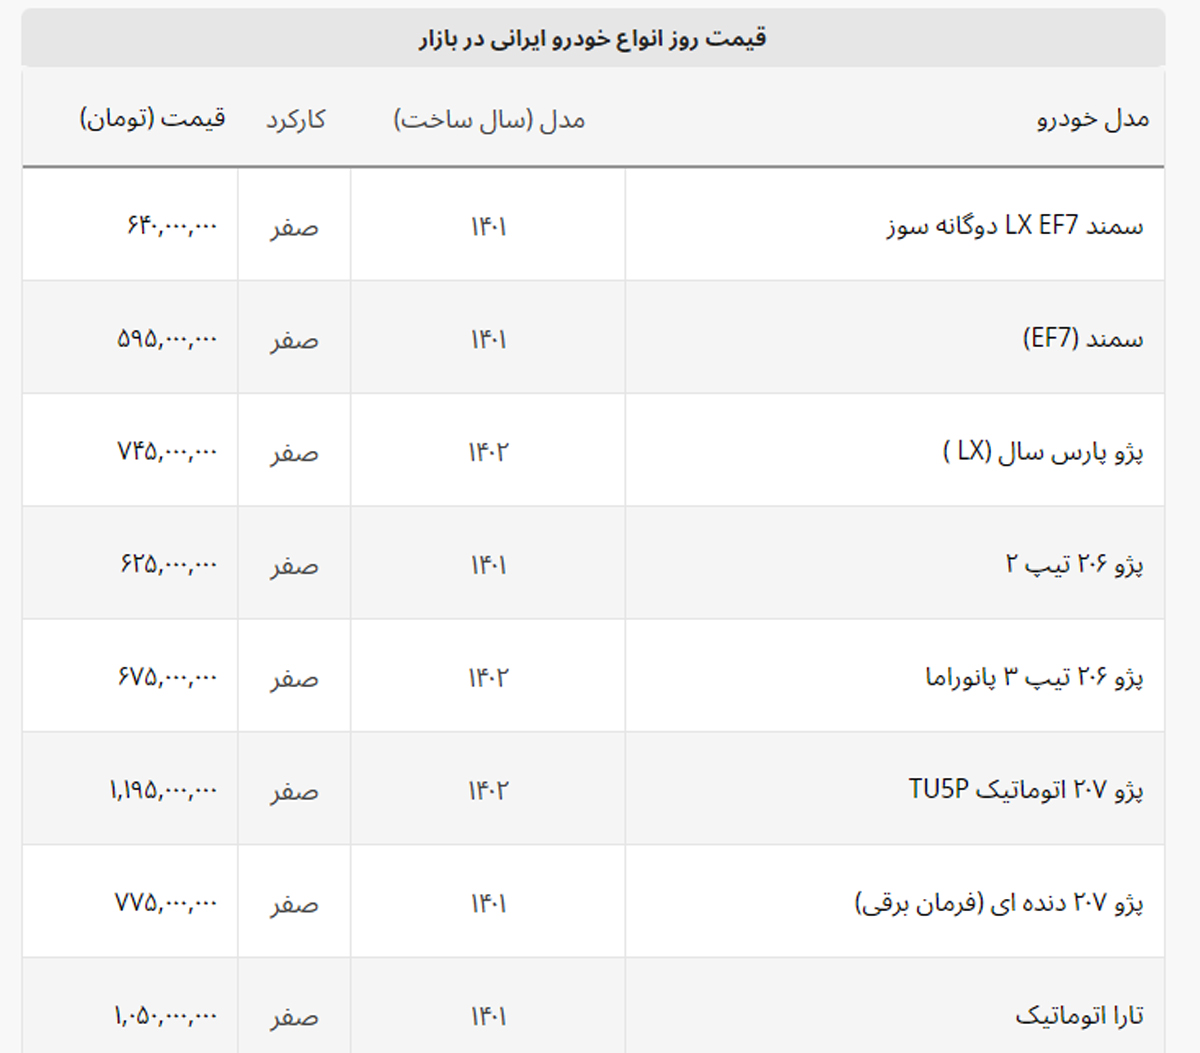 نیسان آبی و سمند هم قیمت شدند + لیست خودروهای ایرانی